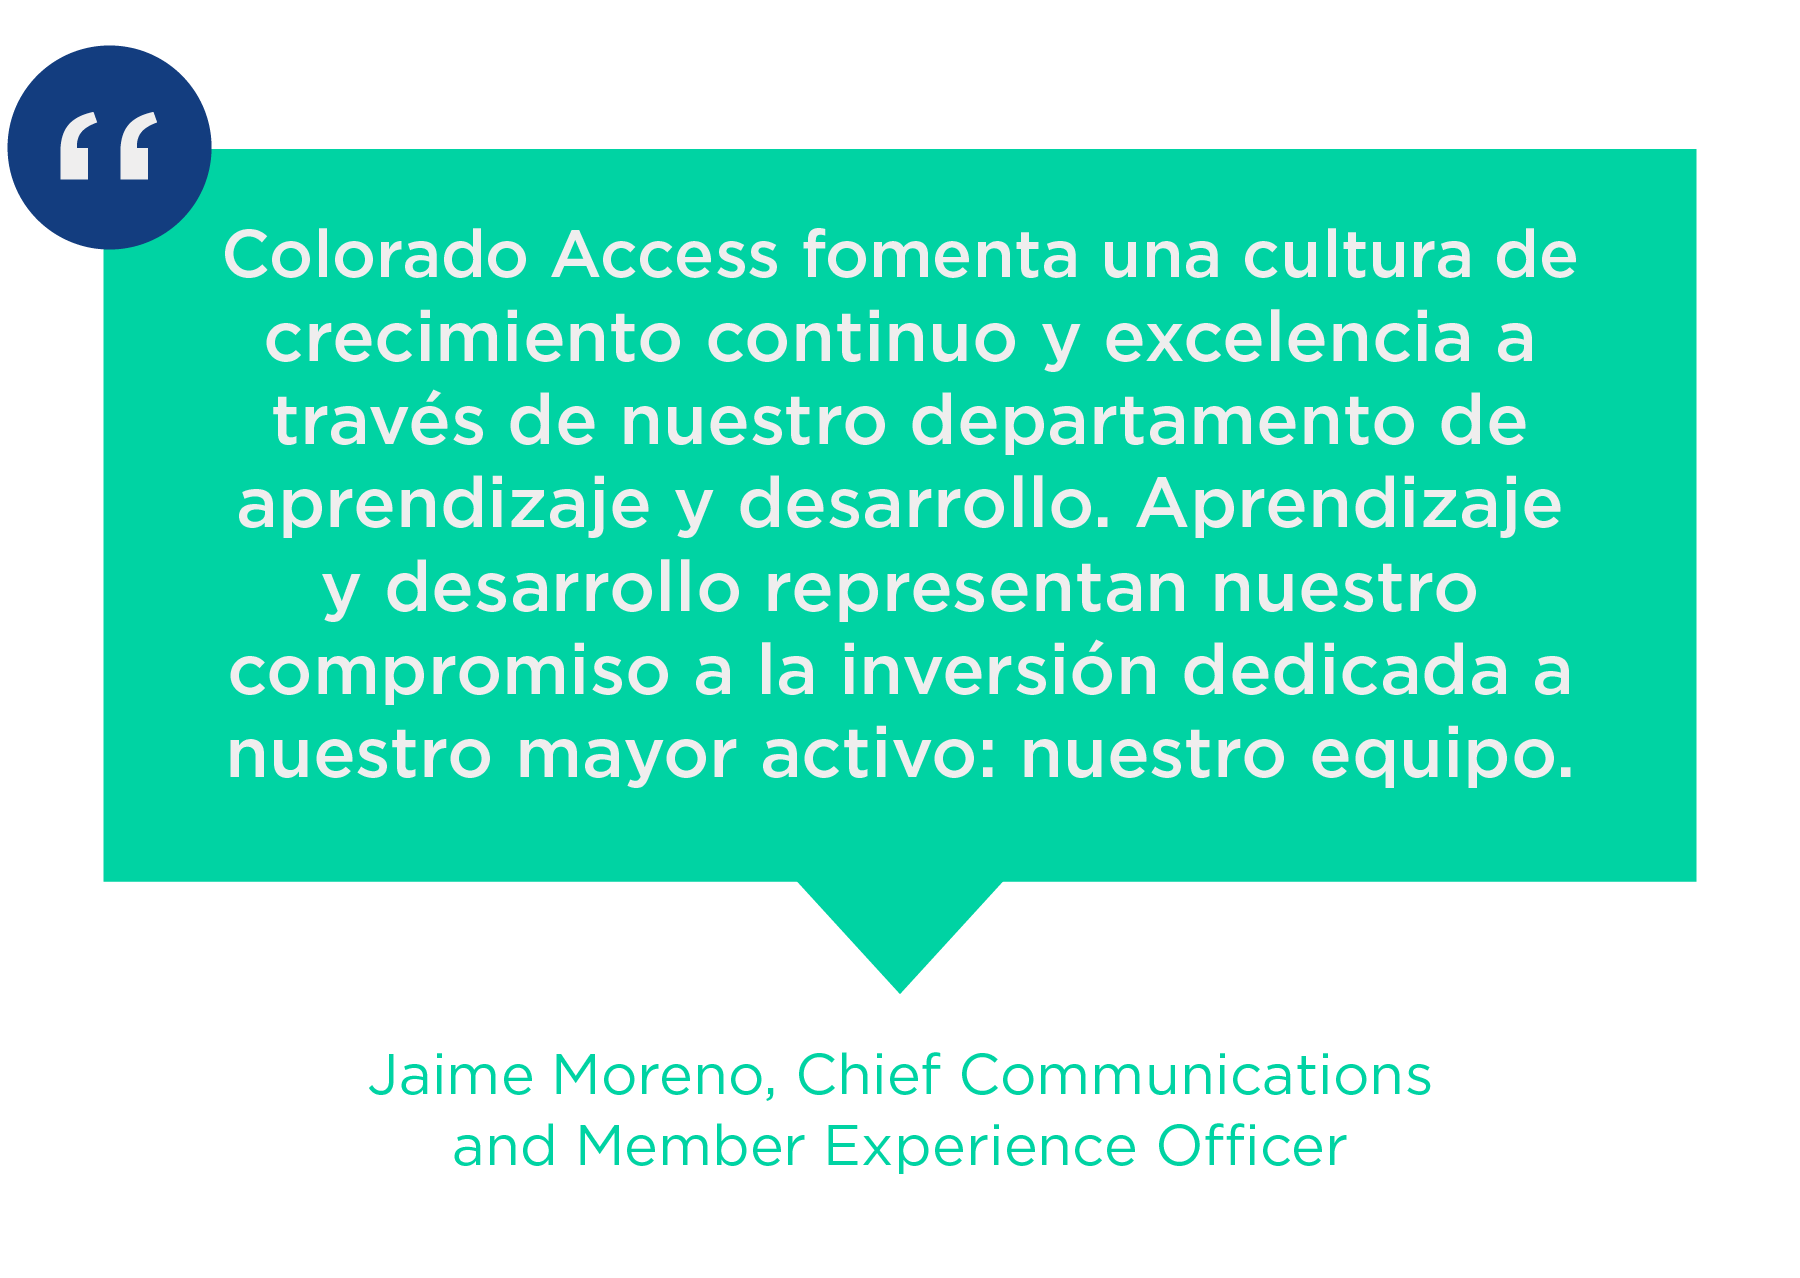 Colorado Access fomenta una cultura di crescita cuntinua è eccellenza attraversu u nostru dipartimentu di apprendimentu è sviluppu. Aprendizaje è sviluppu rappresentanu u nostru impegnu à l'investimentu dedicatu à u nostru maiore attivu: u nostru squadra